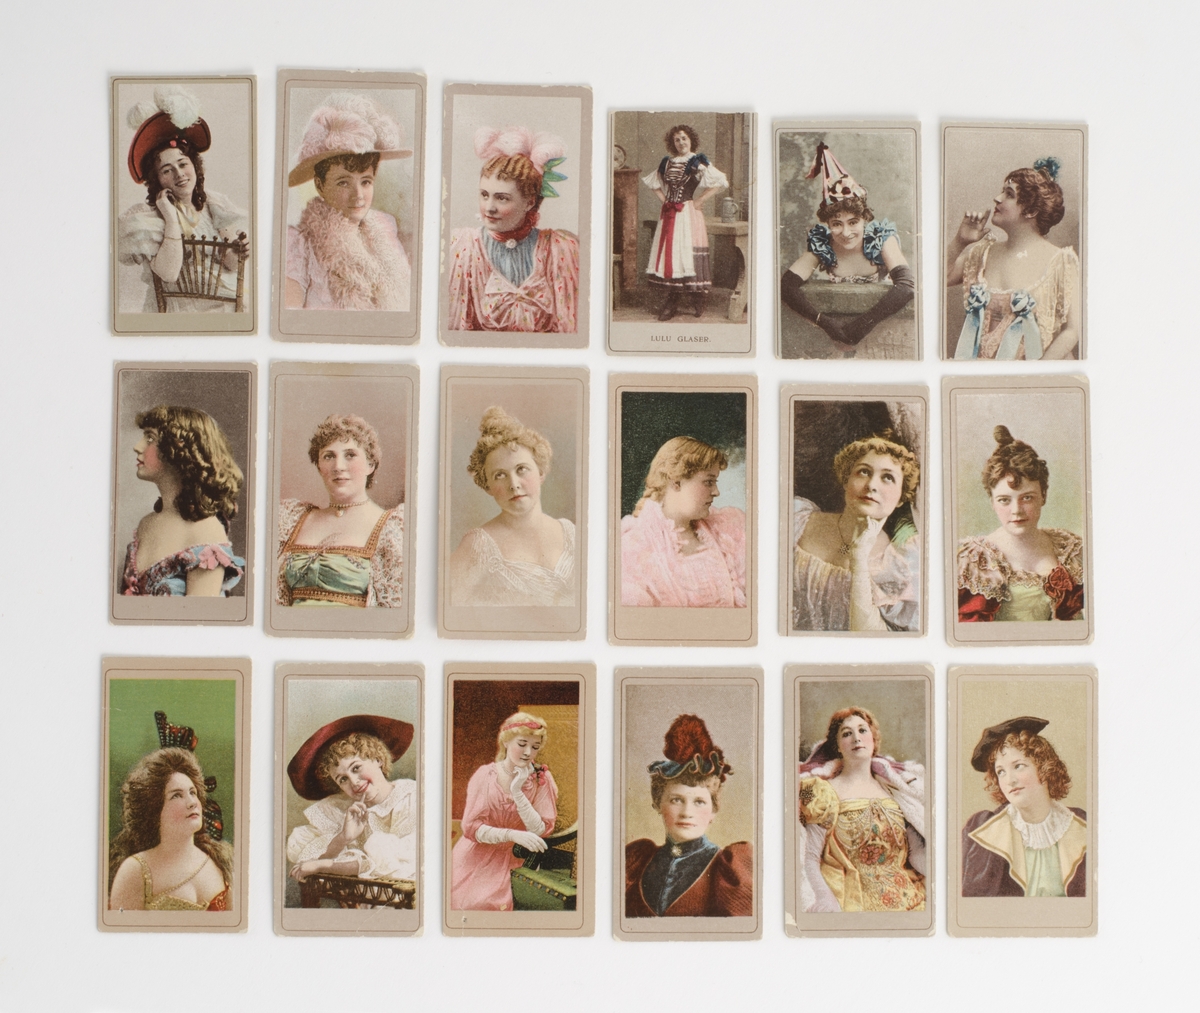 Kort med bilder, 85 st. I färg och svartvitt, föreställande porträtt av damer, damer i helfigur, ett med en man och ett med en båt. Reklam/samlarbilder från cigarettpaket mestadels från "The American Tobacco Co".